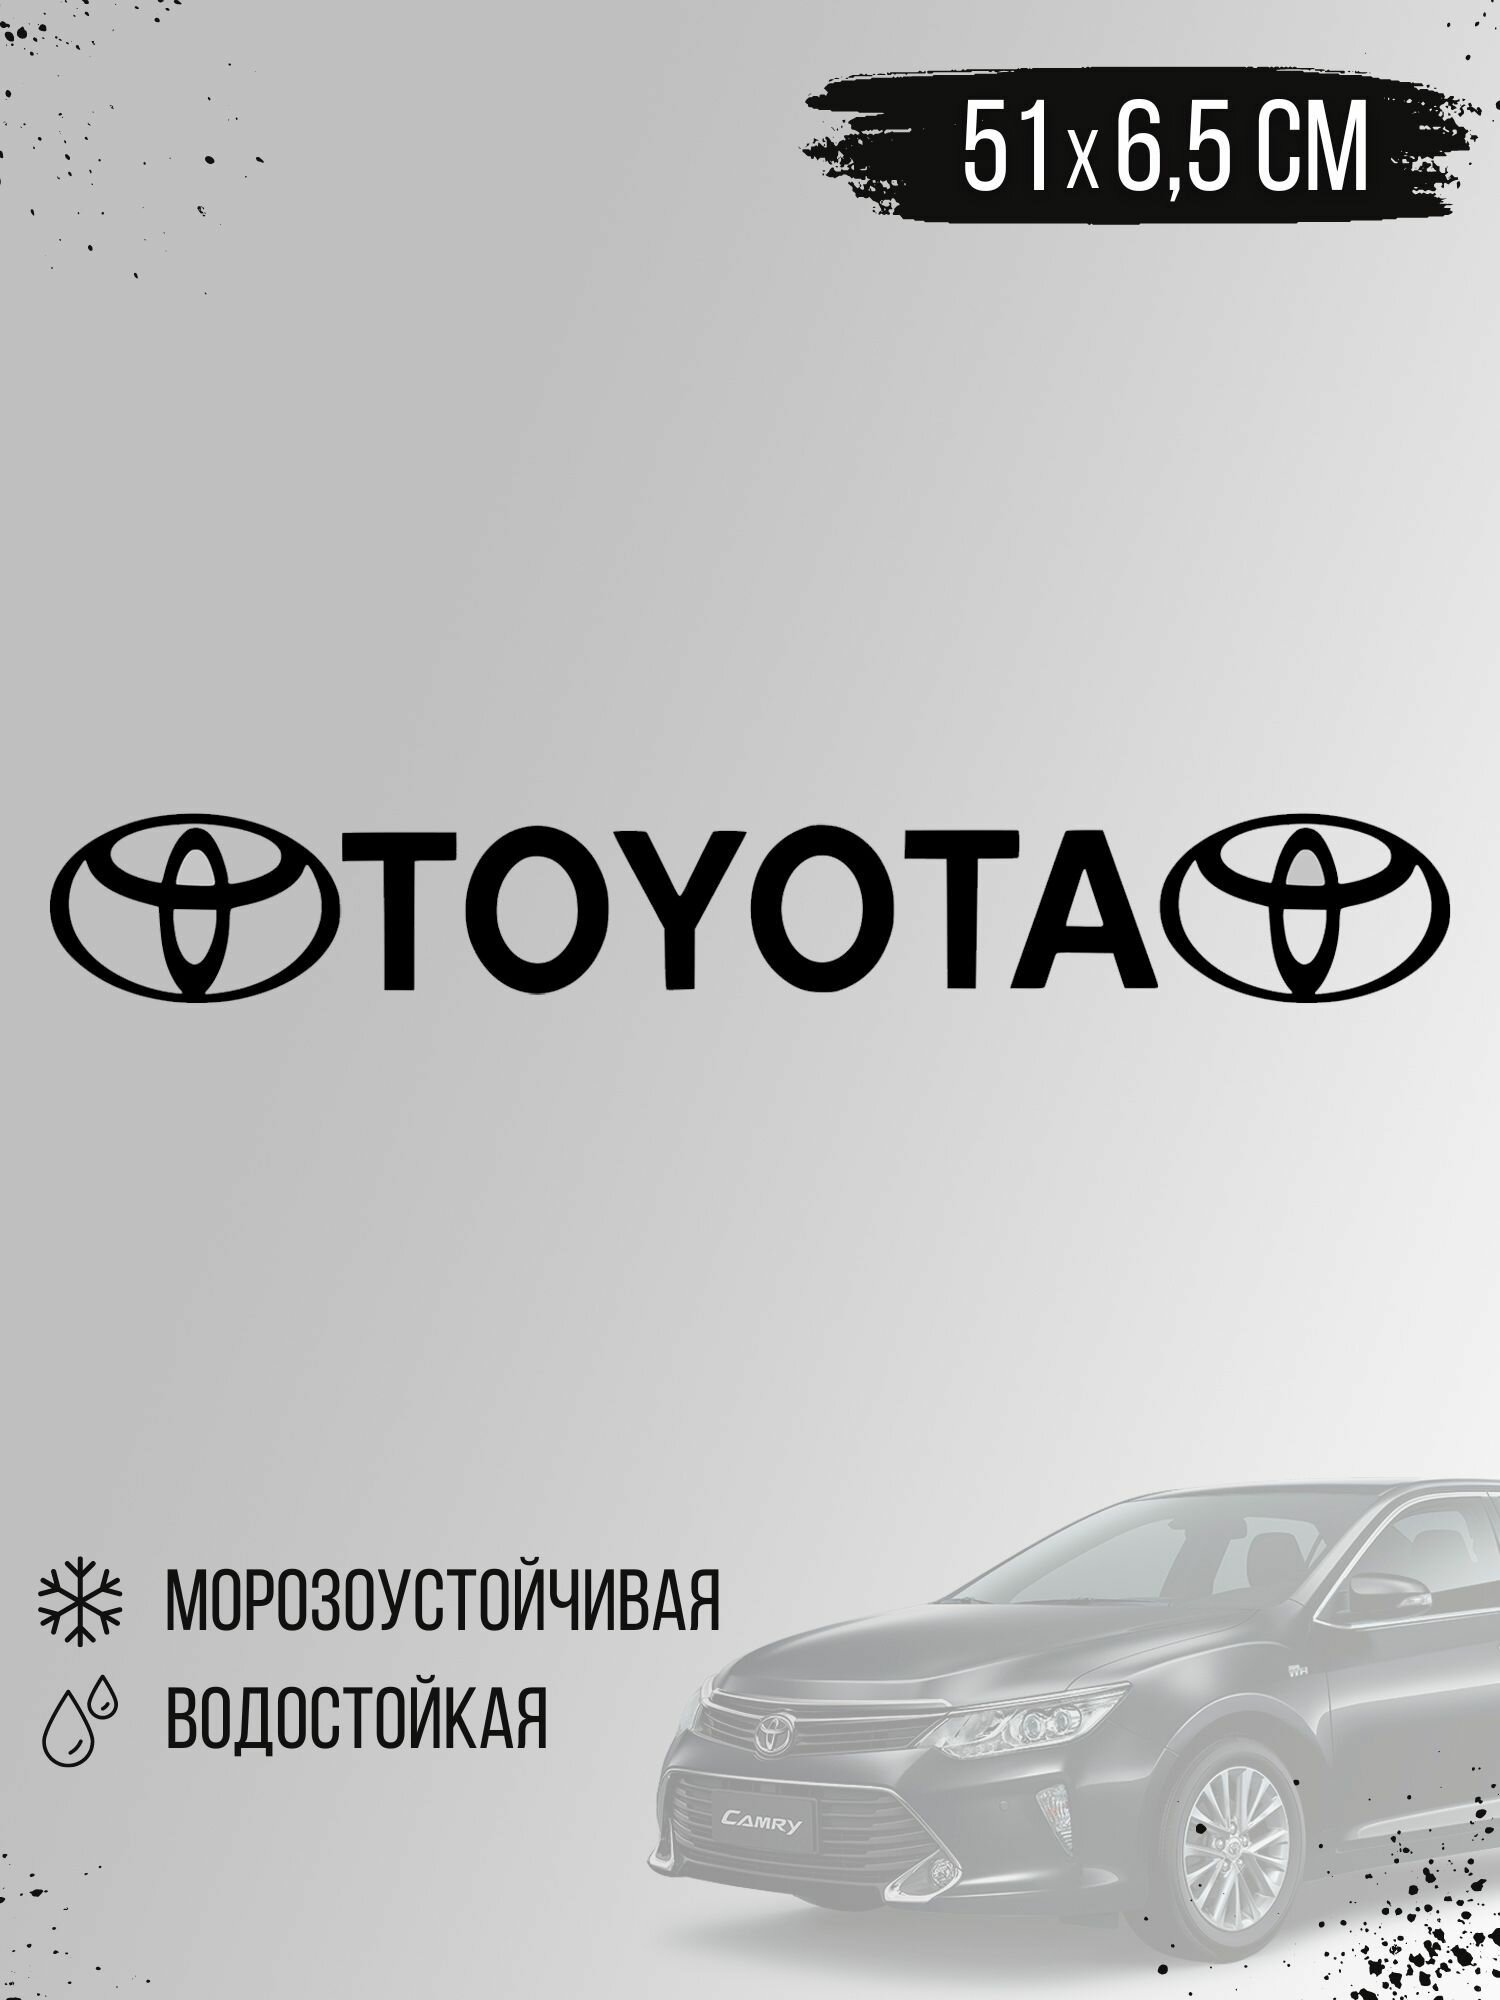 Наклейка на авто - марка машины "TOYOTA" на стекло, дверь, черный